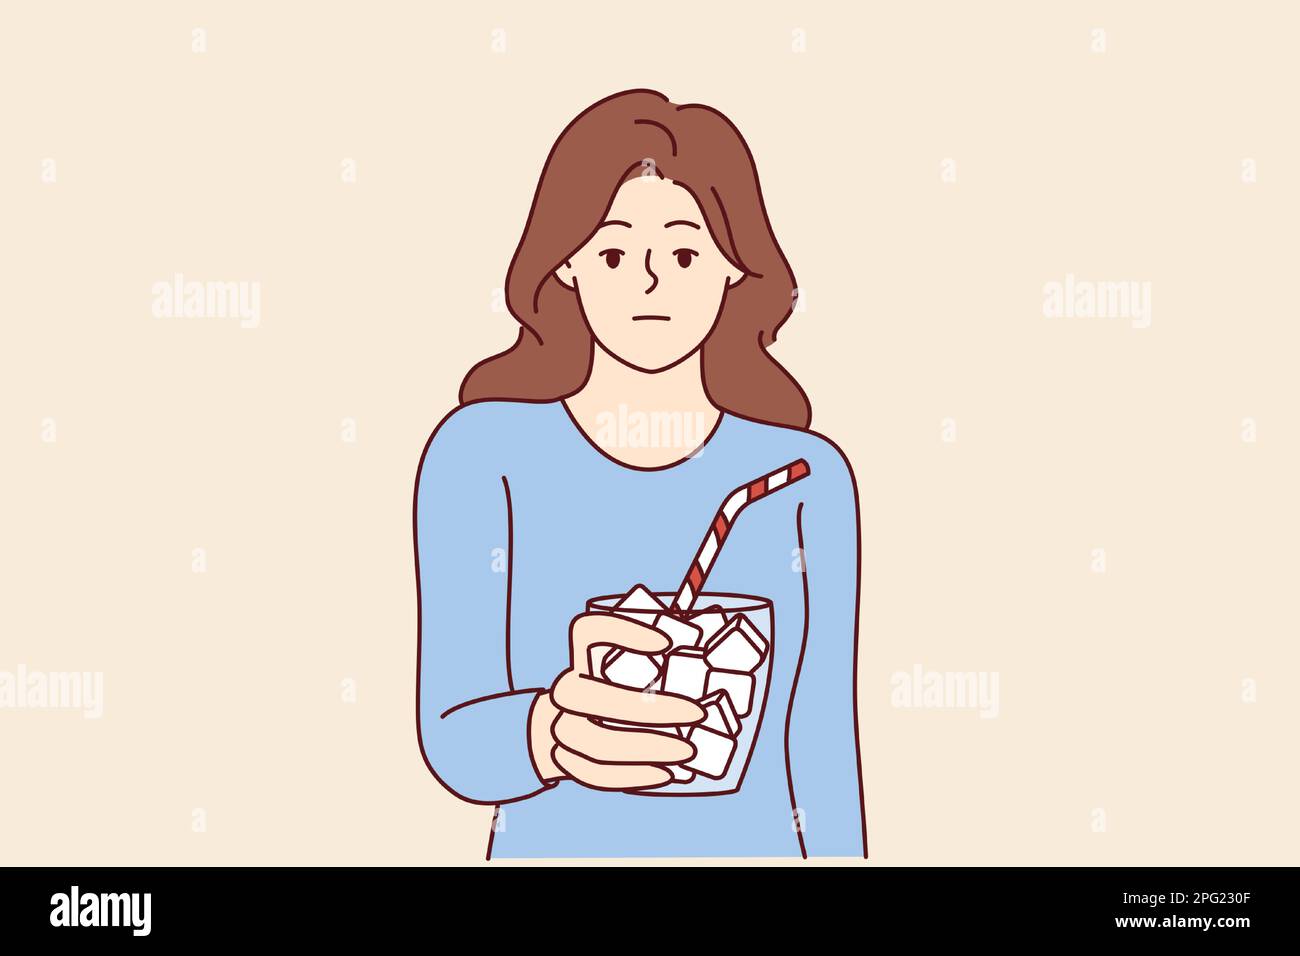 Emotionloses Mädchen hält Glas voll Zucker mit Stroh symbolisiert ungesunde Ernährung, die zu Diabetes führt. Frau, die zu viel Zucker trinkt, braucht eine Diät, um Insulinprobleme zu vermeiden Stock Vektor